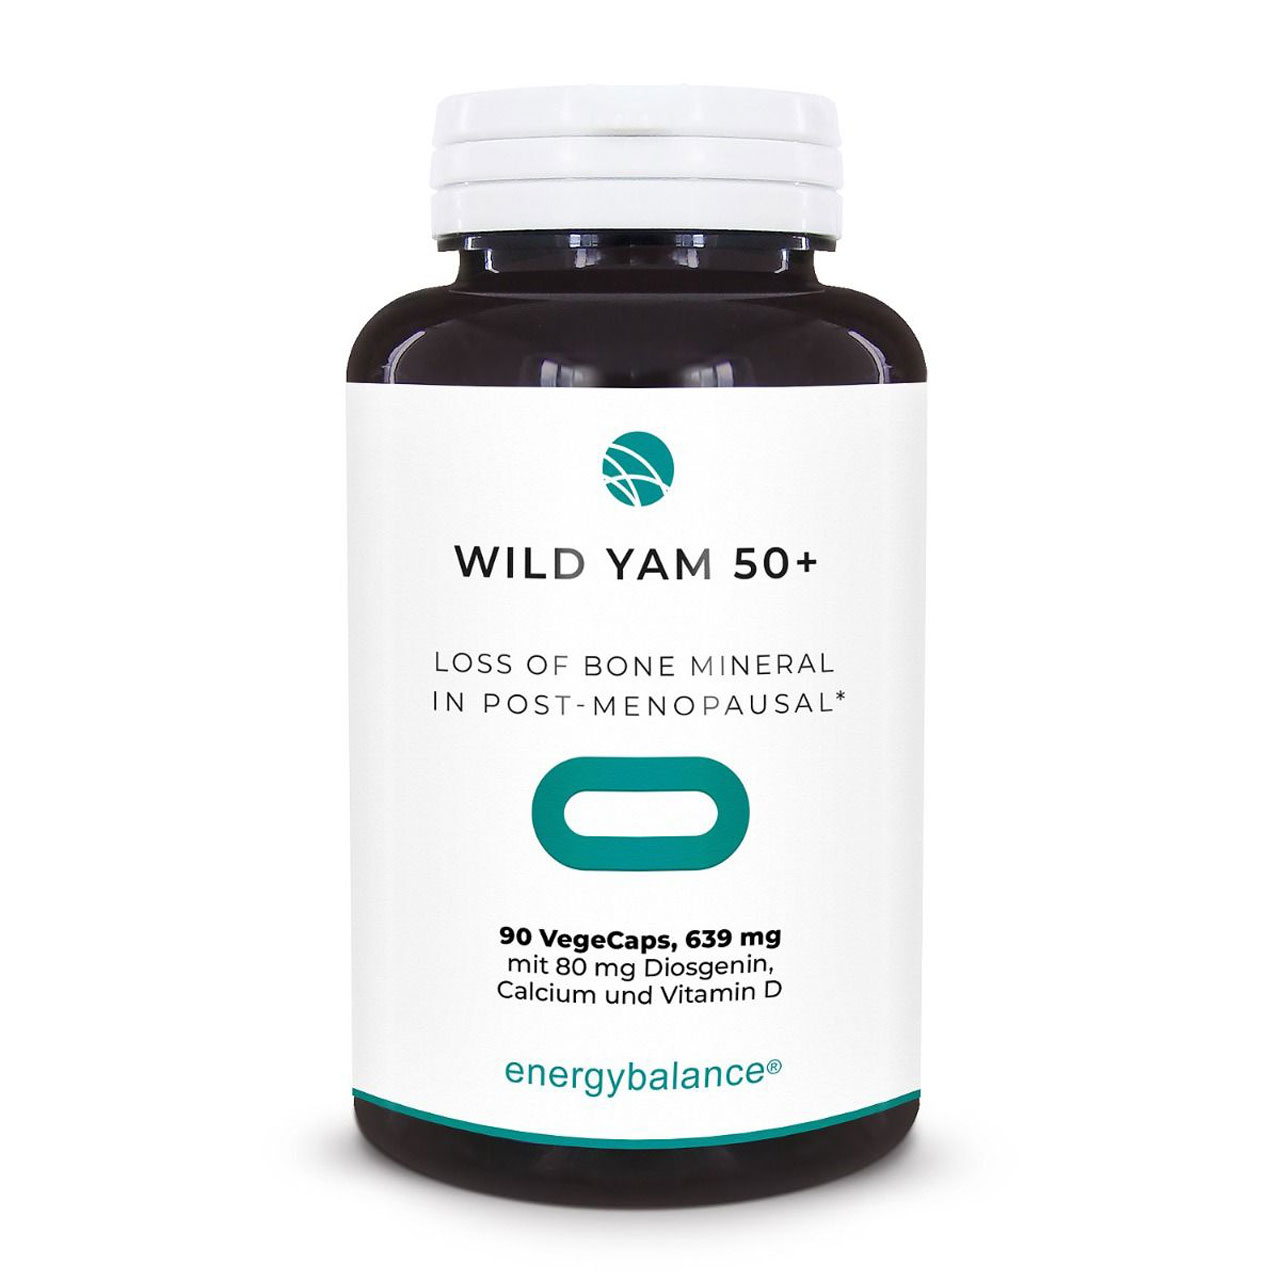 Wild Yam 50+ with calcium and vitamin D, 90 VegeCaps